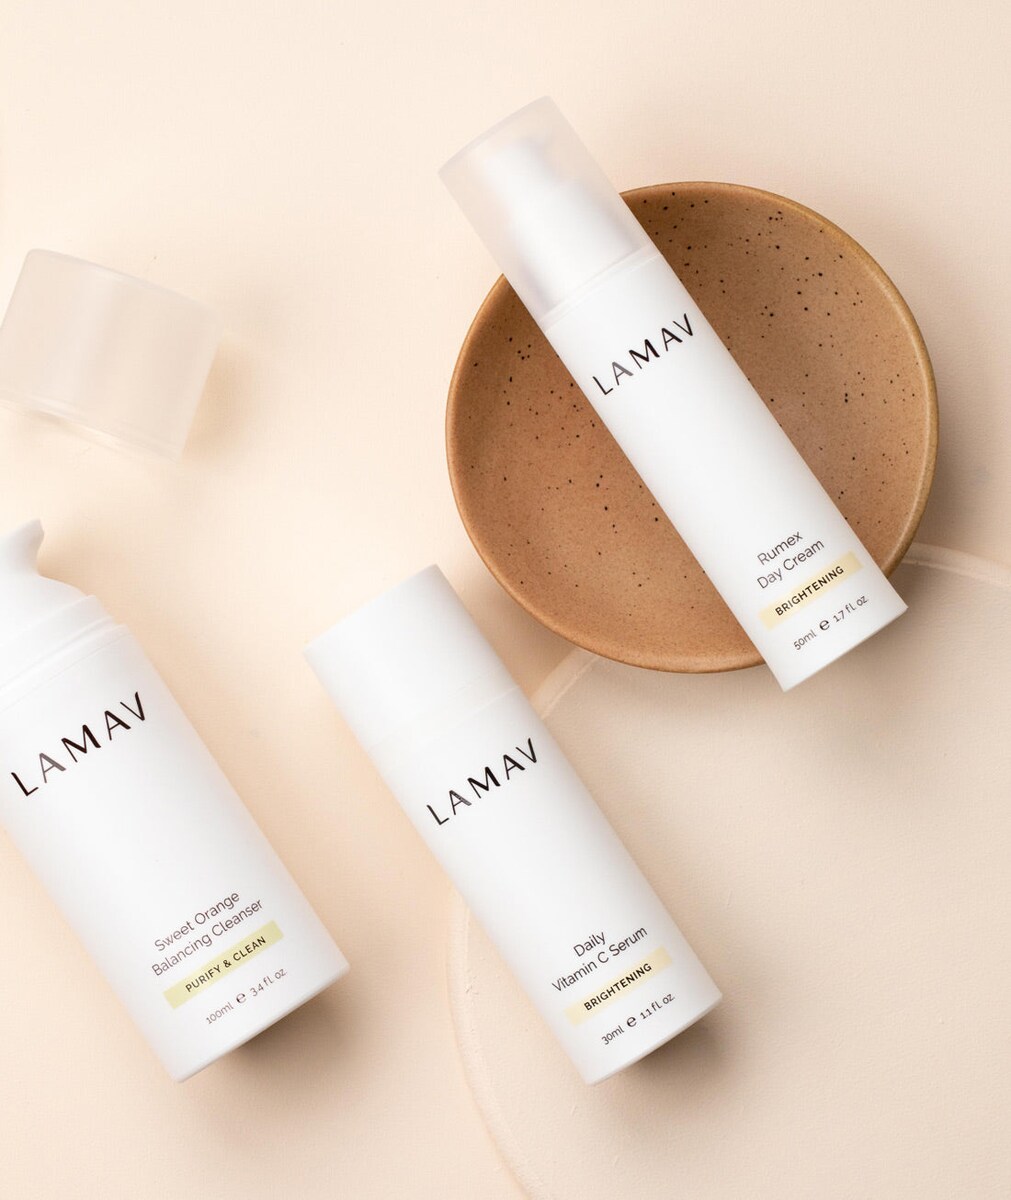 LAMAV Organic Skincare Essentials Brightening 3 Pack